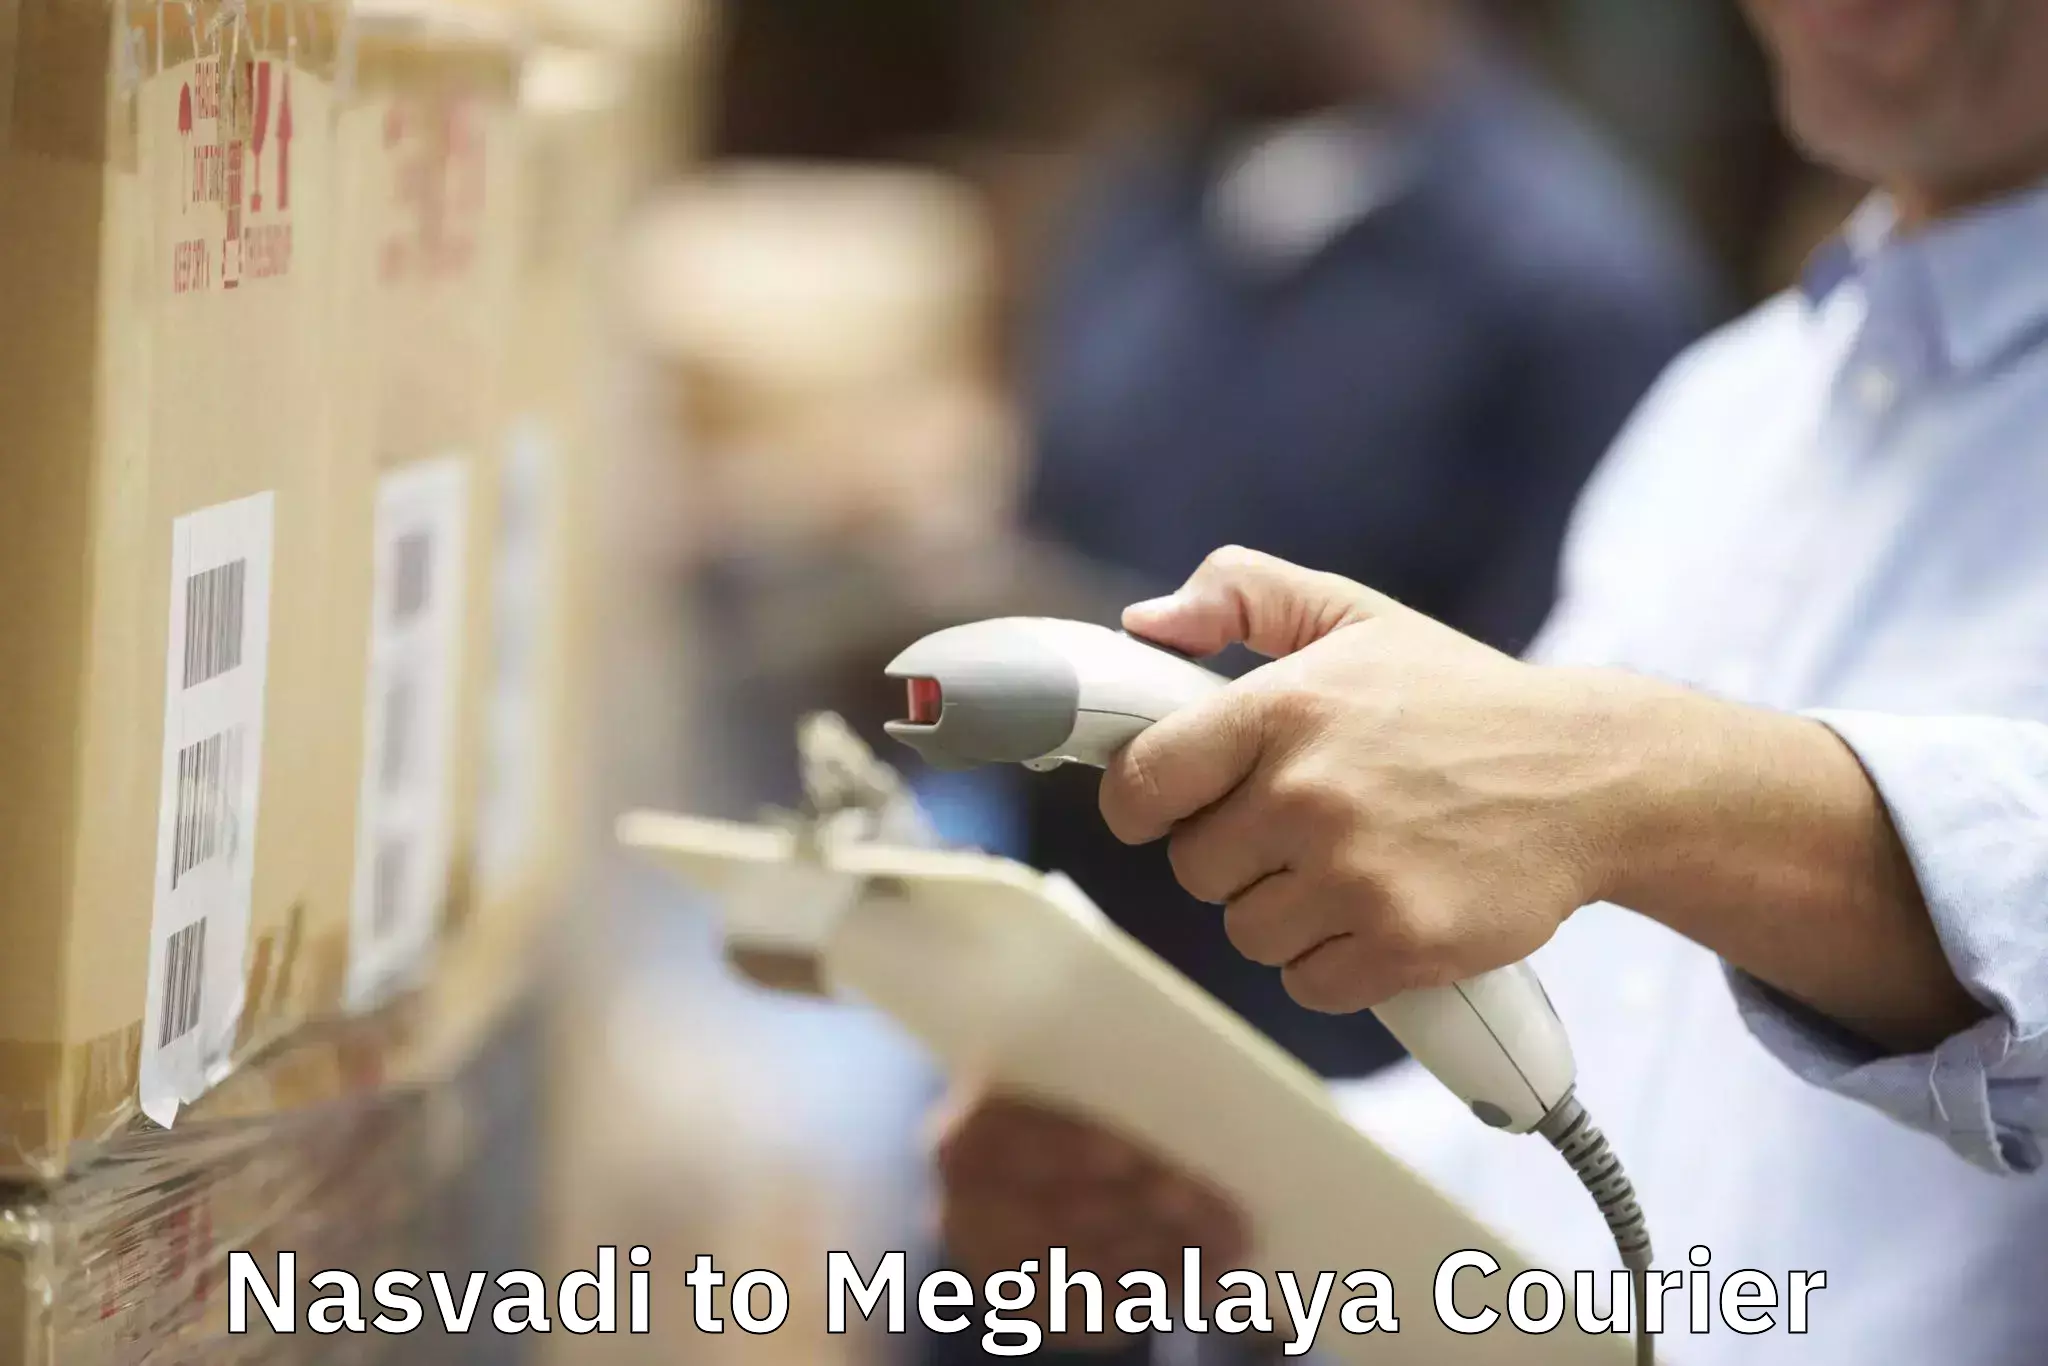 Furniture moving services Nasvadi to Meghalaya